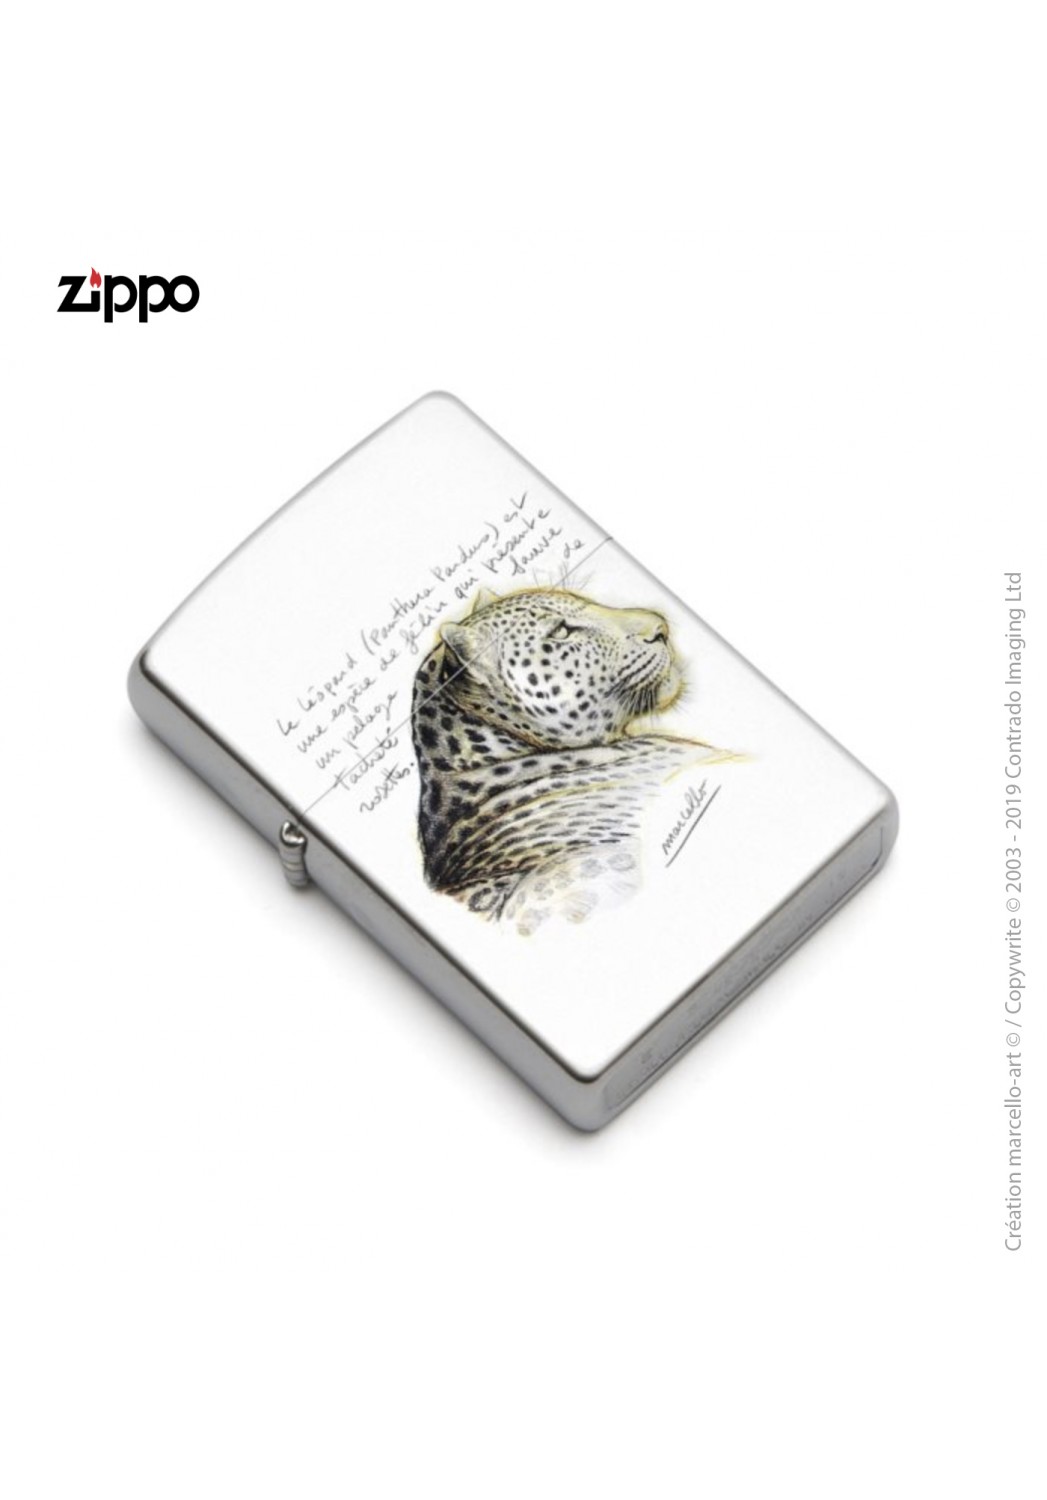 Marcello-art: Decoration accessoiries Zippo 252 leopard head